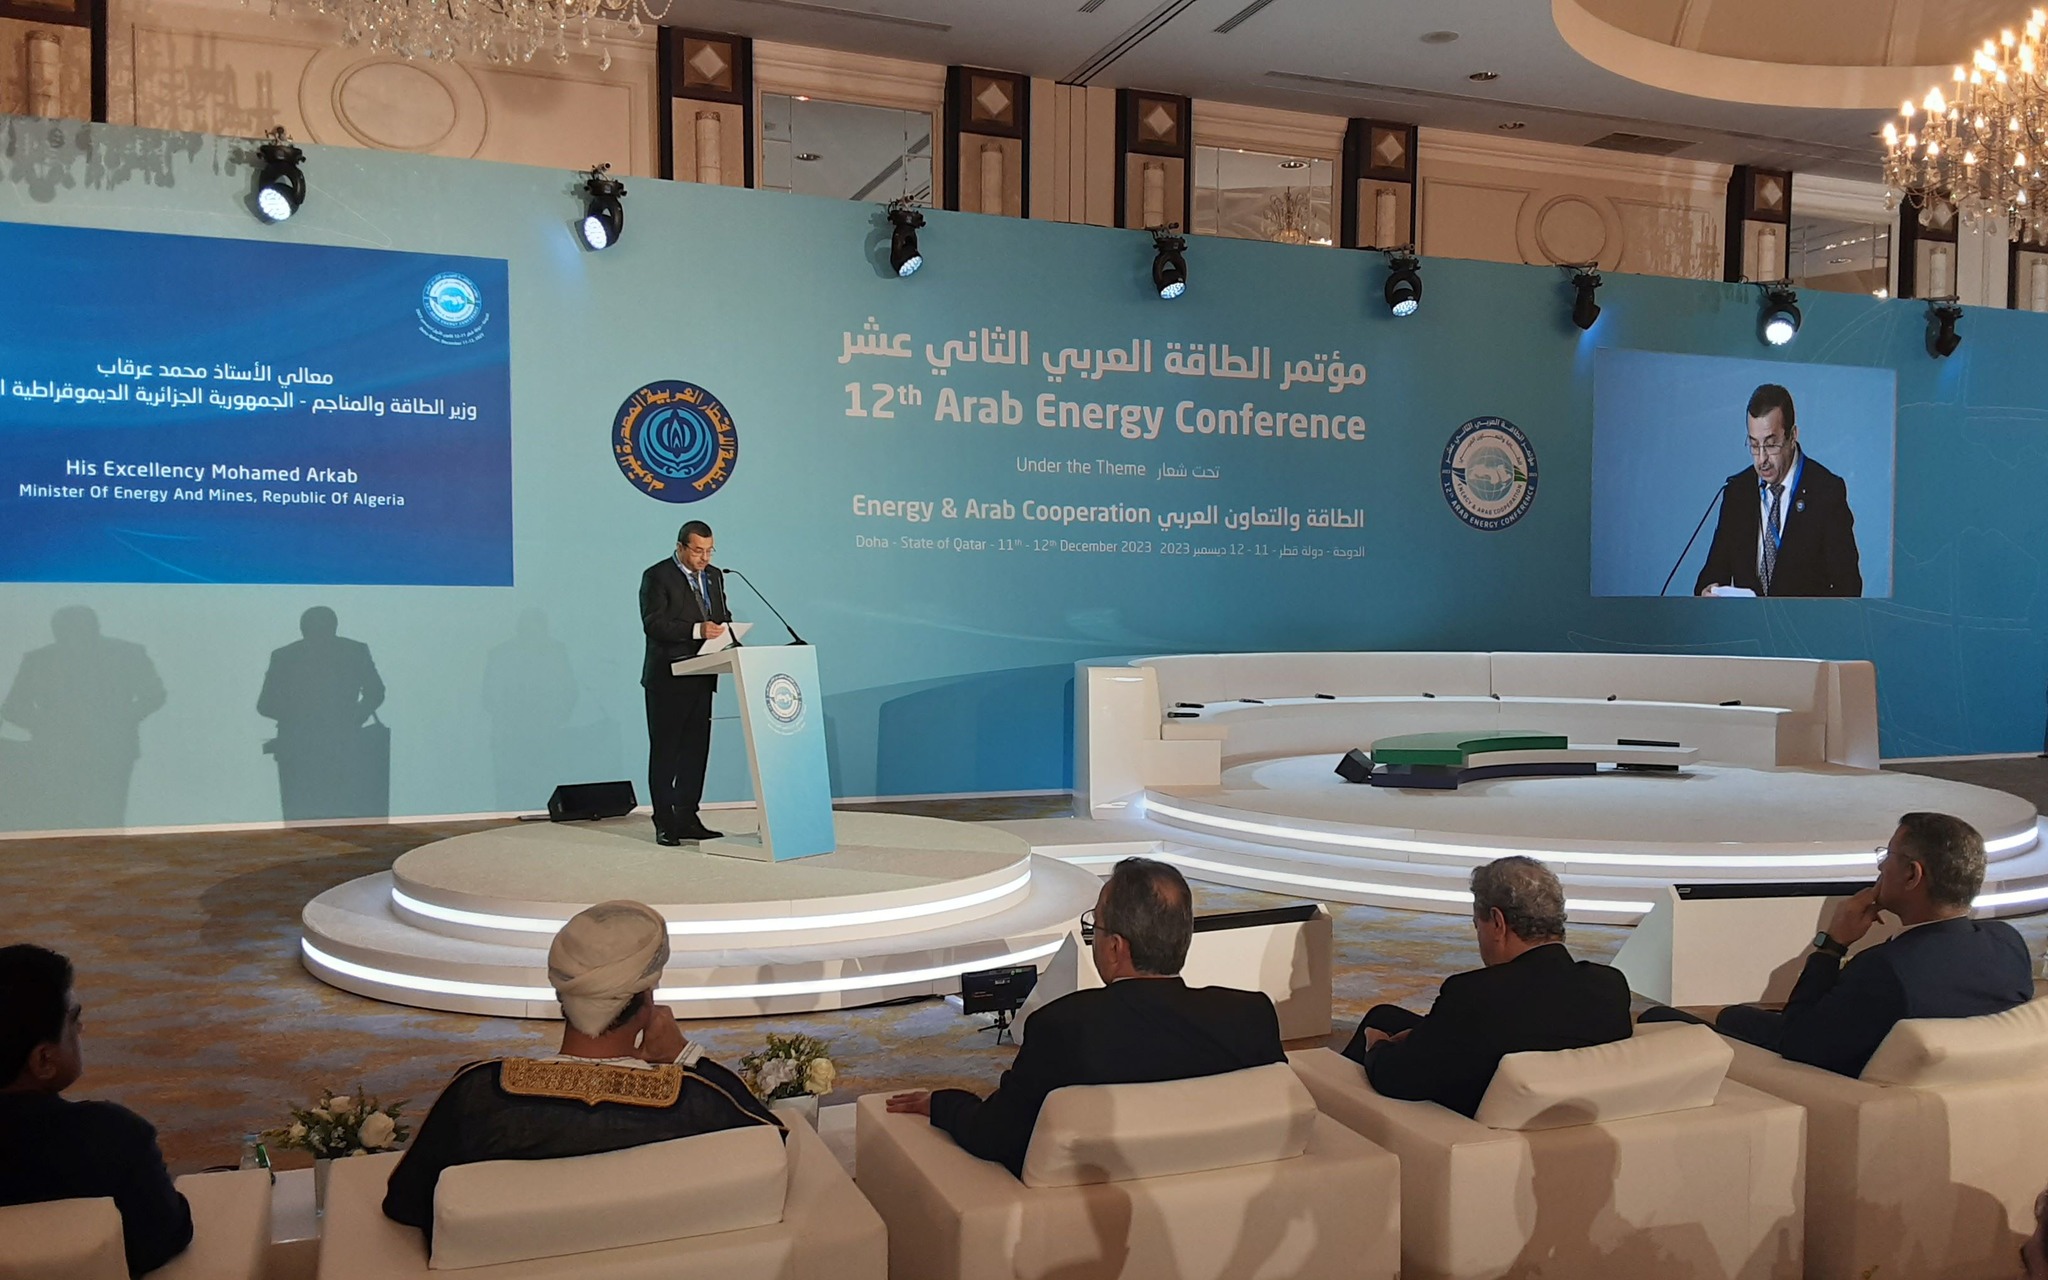 وزير الطاقة الجزائري محمد عرقاب متحدثًا في مؤتمر الطاقة العربي